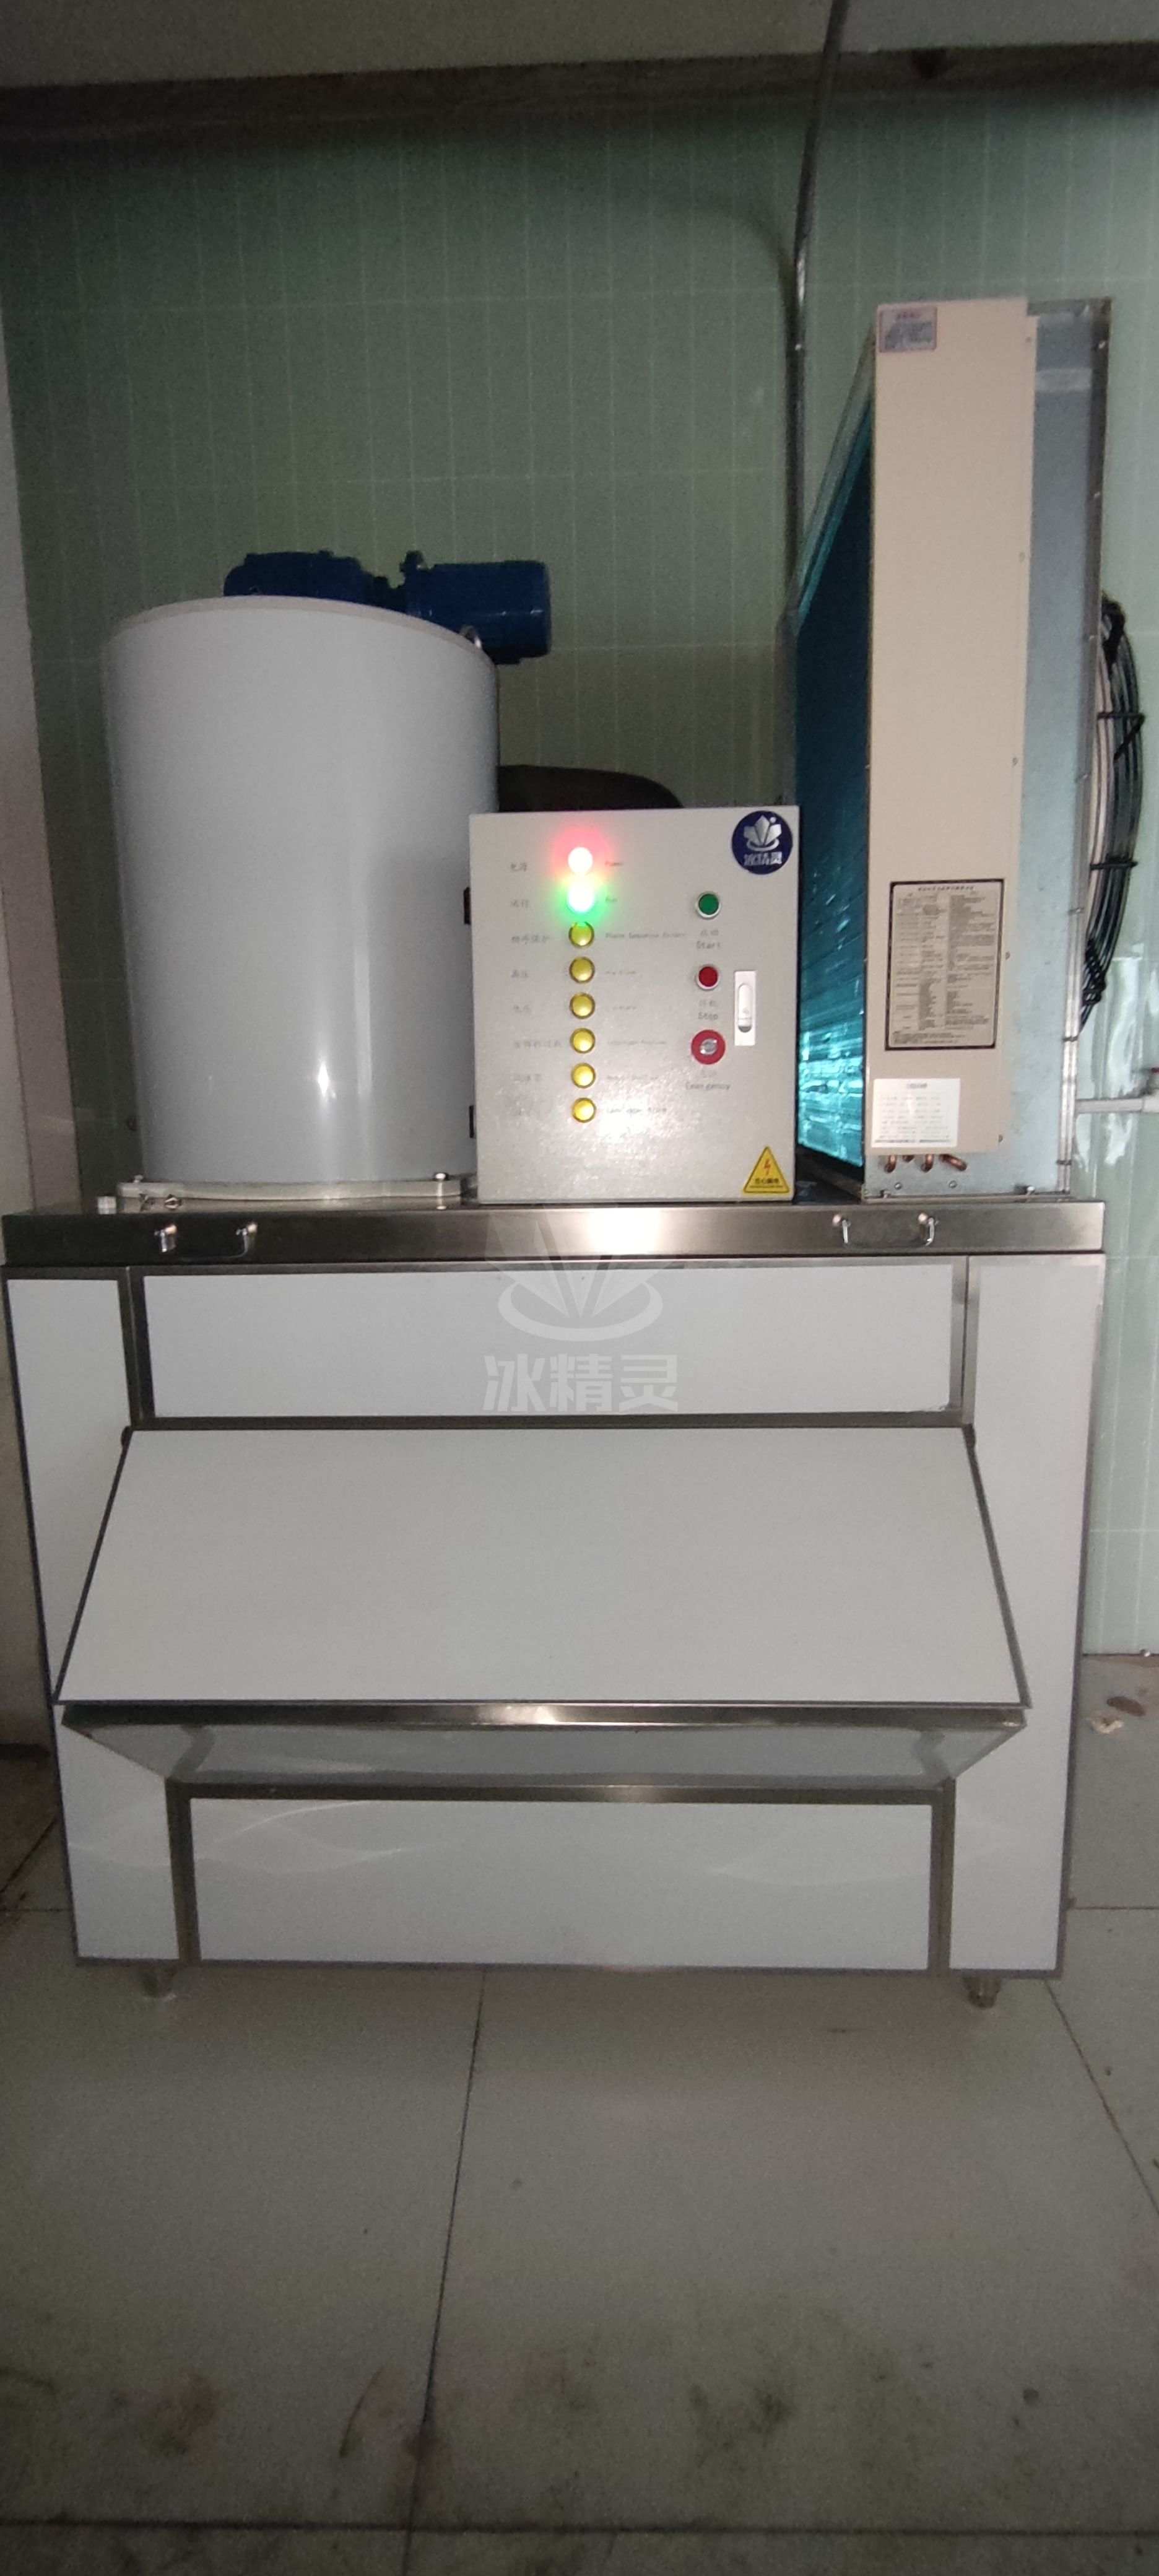 1500公斤片冰机已交付北京市房山《惠民生活广场》